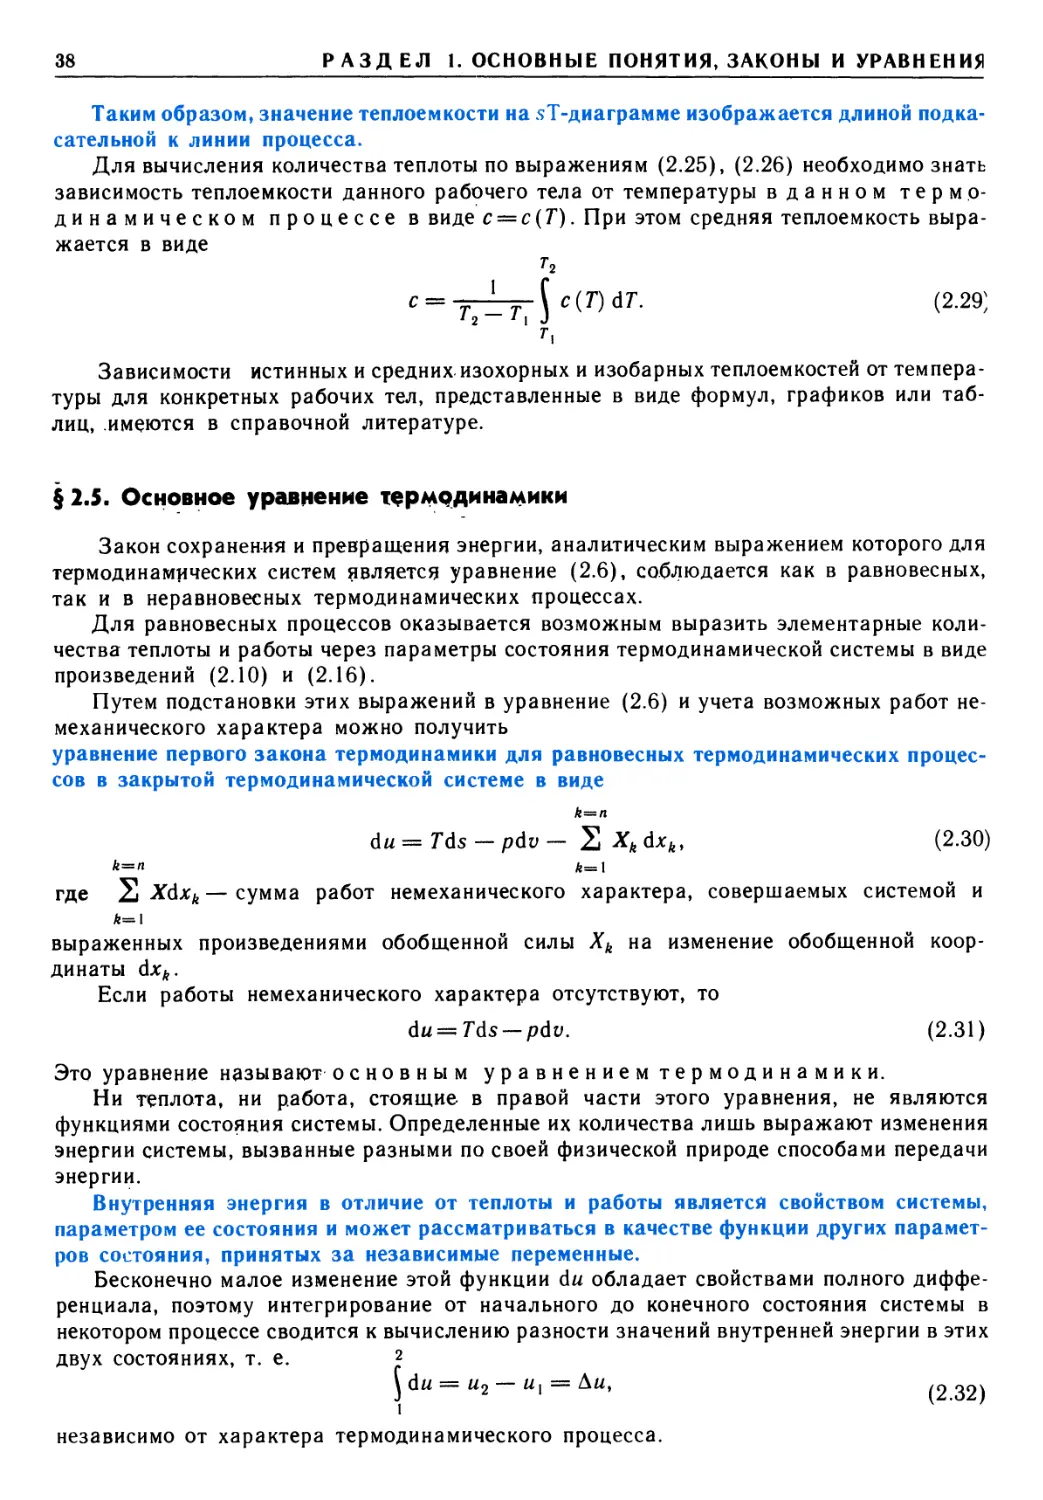 § 2.5. Основное уравнение термодинамики